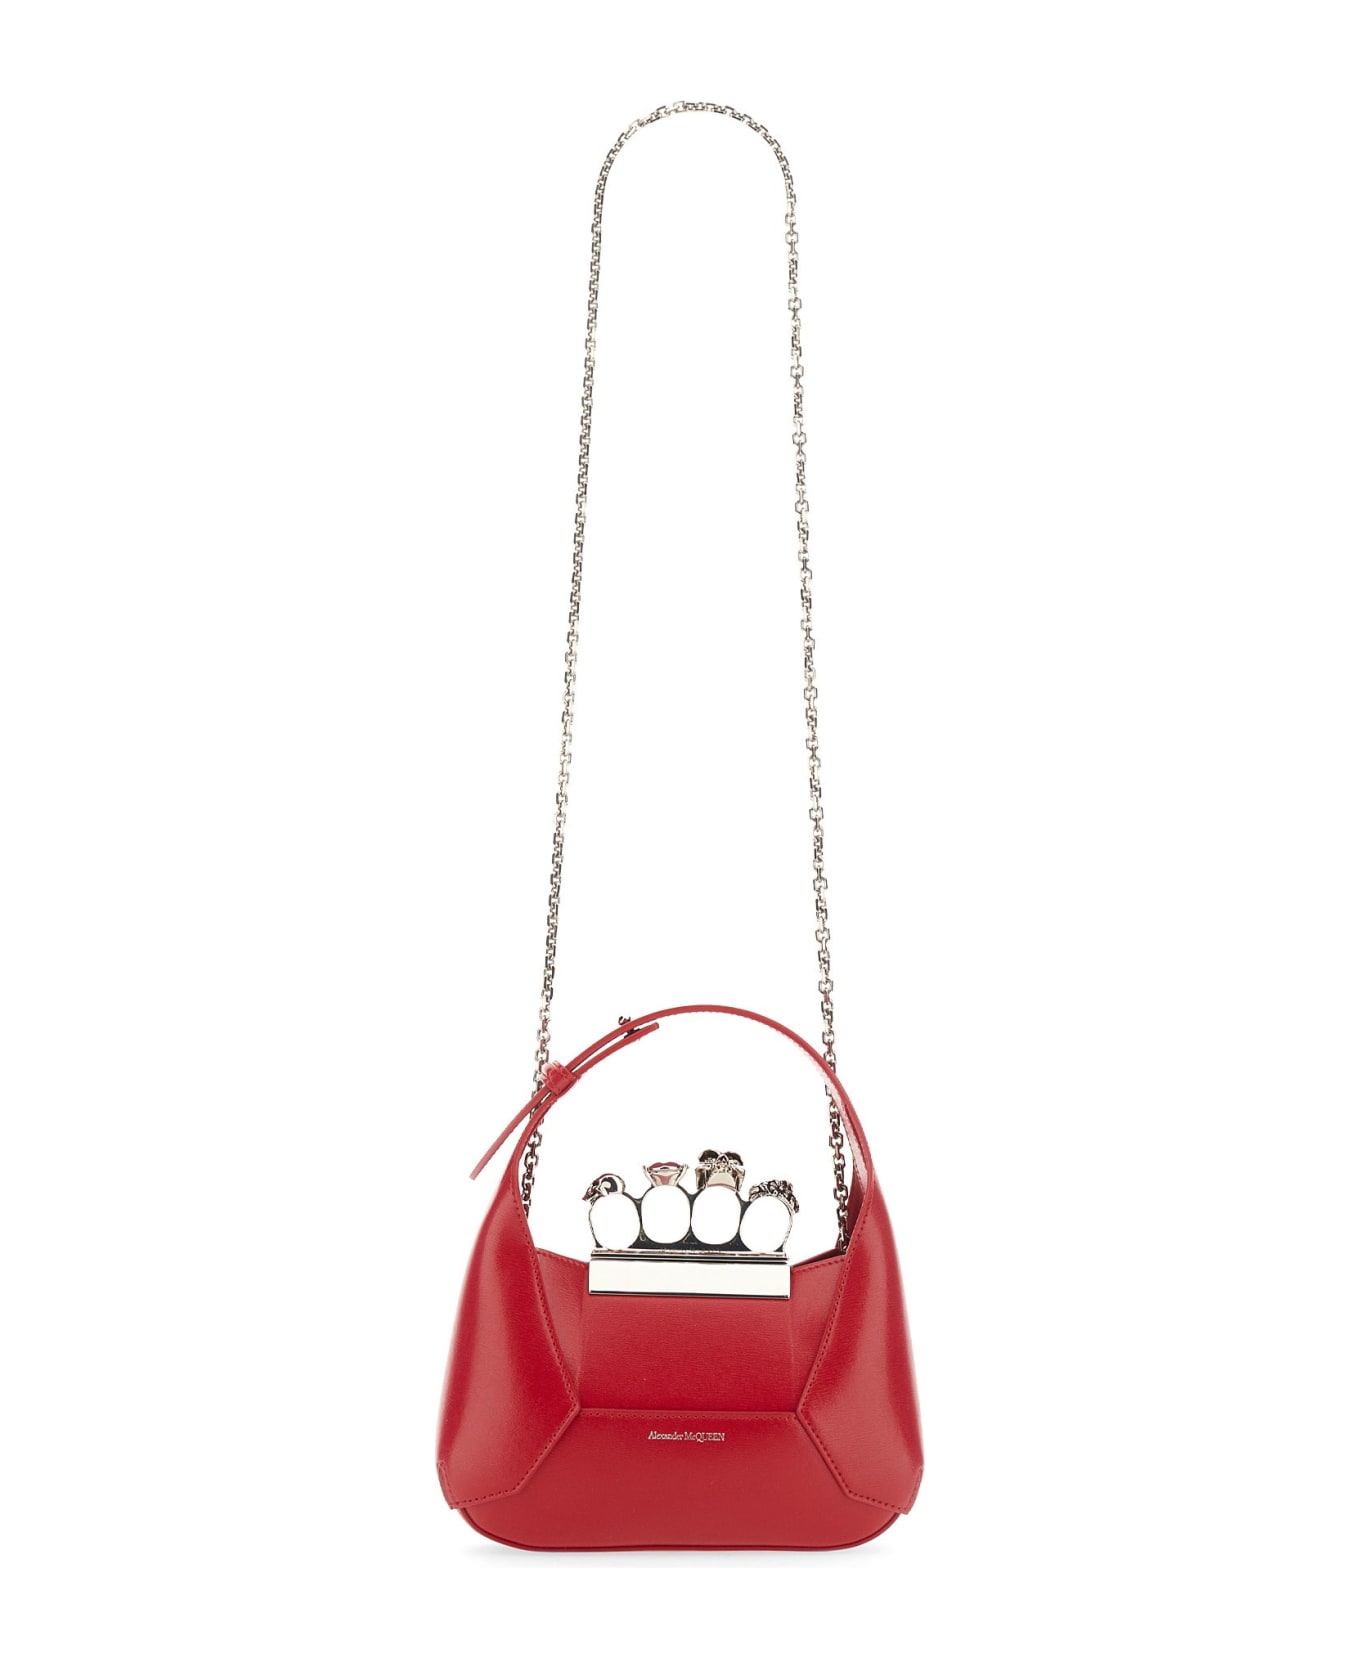 Alexander McQueen Jeweled Hobo Bag - Red